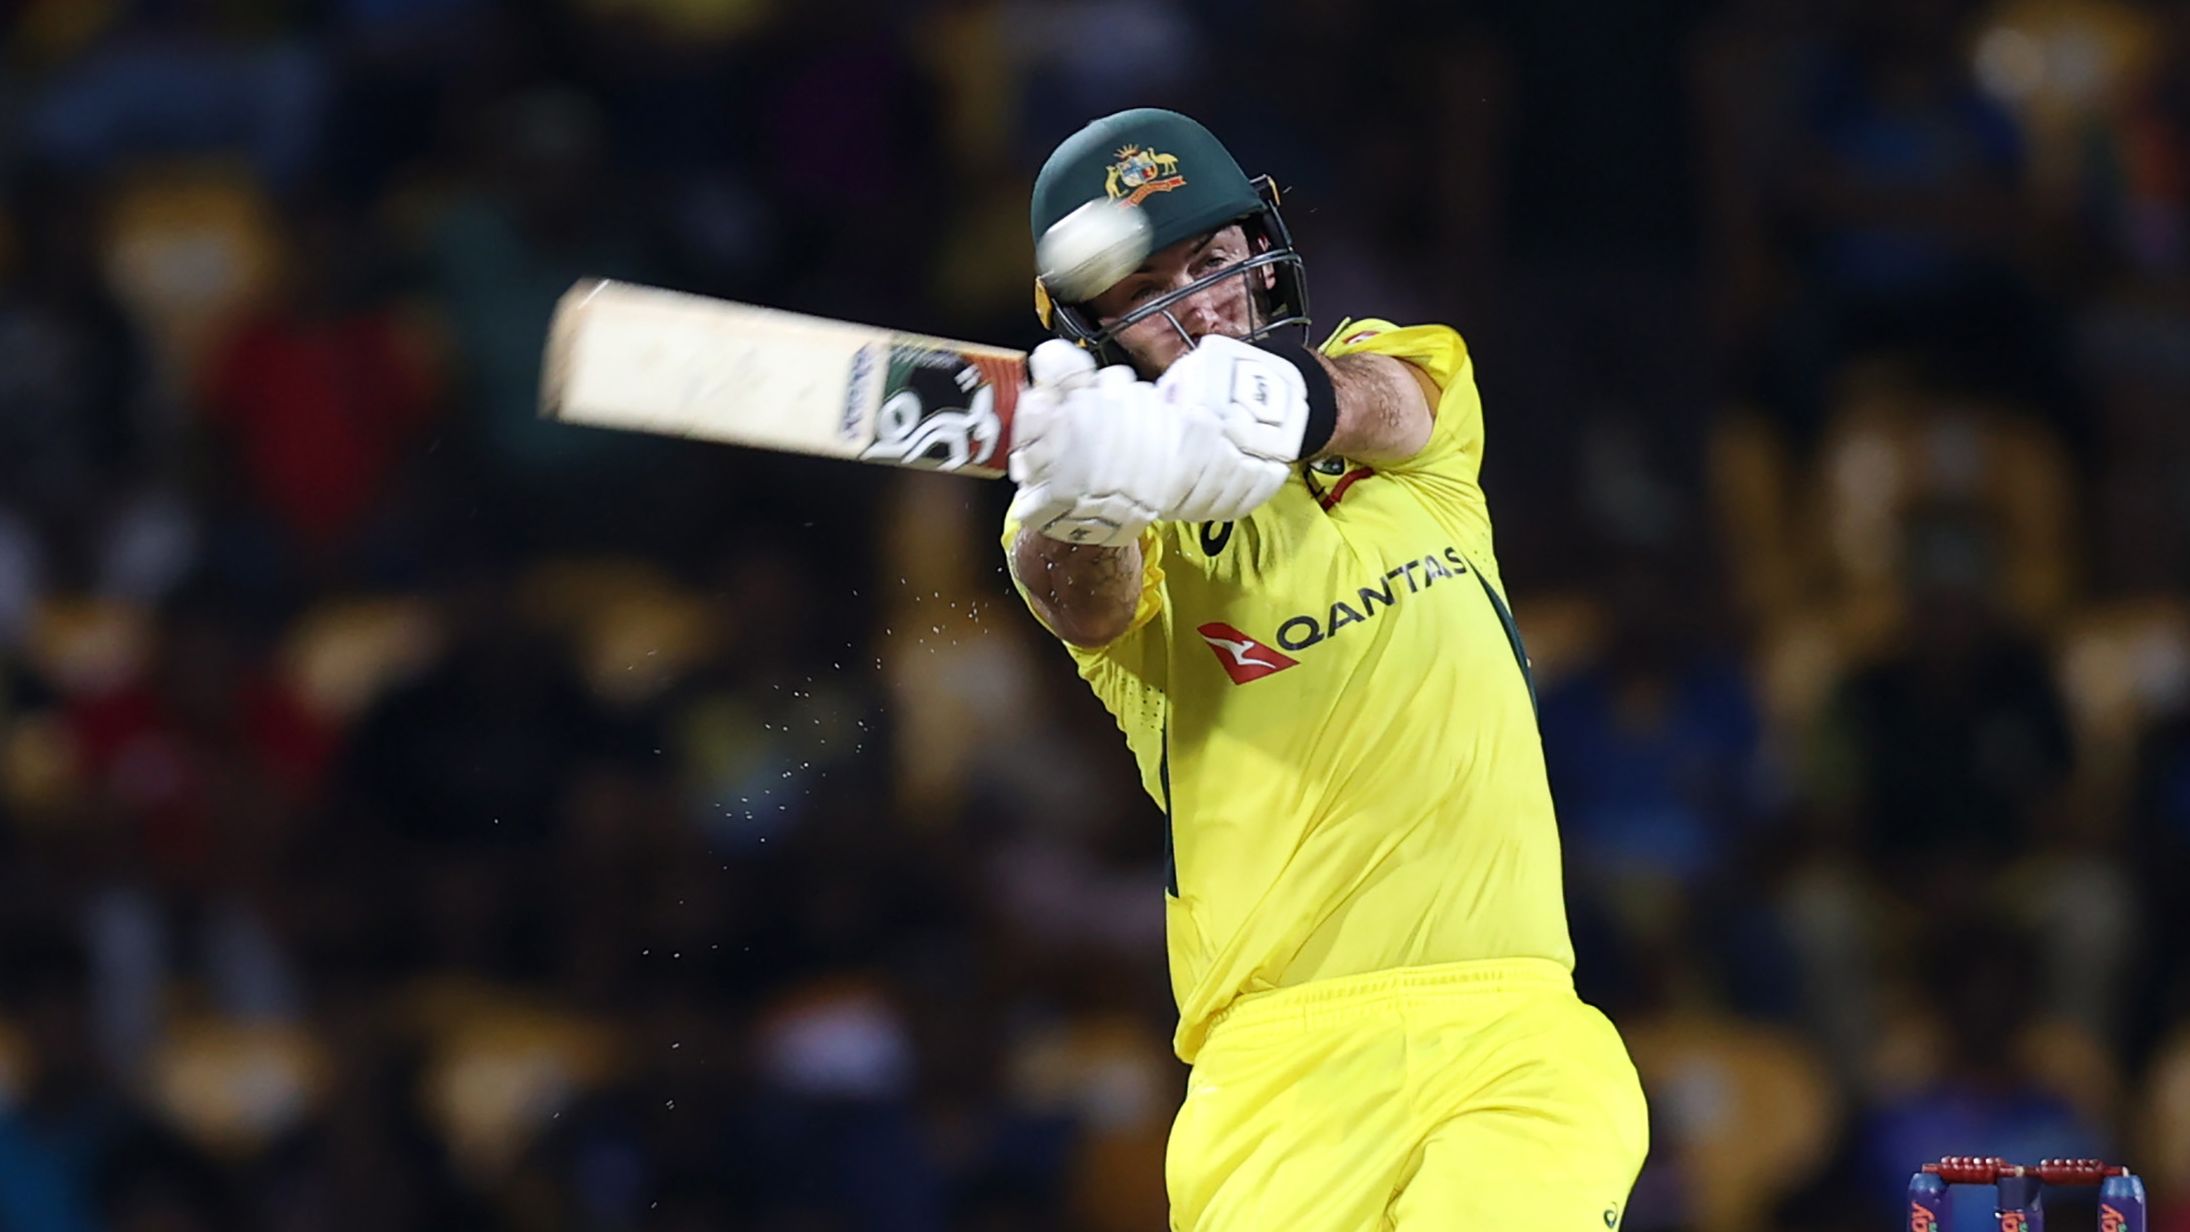 Glenn Maxwell leads Australia to victory over Sri Lanka in first ODI